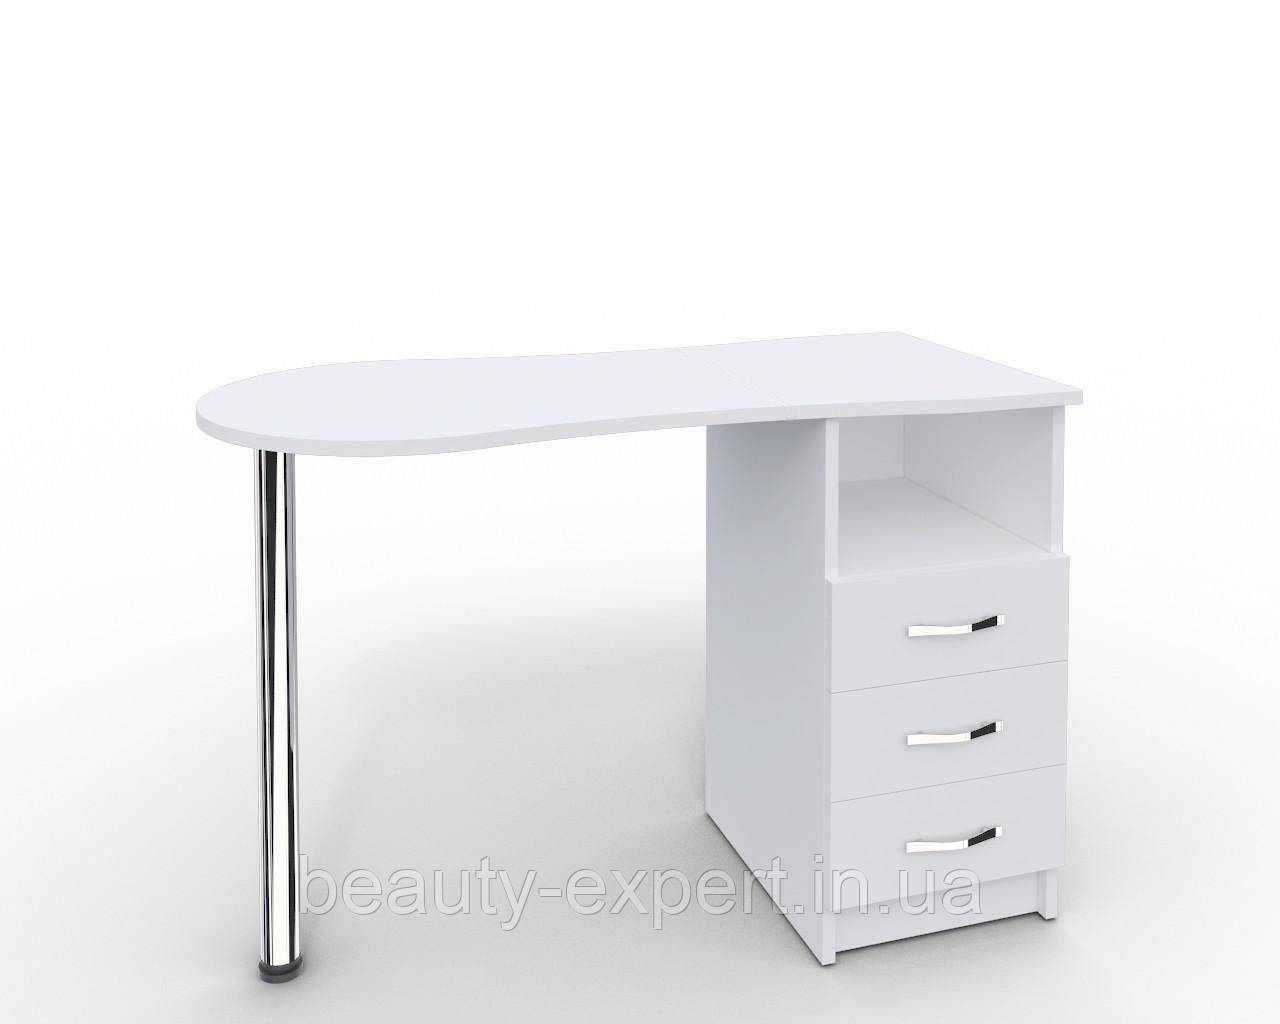 Манікюрний стіл для салону краси, для кабінету манікюру "Естет" білий